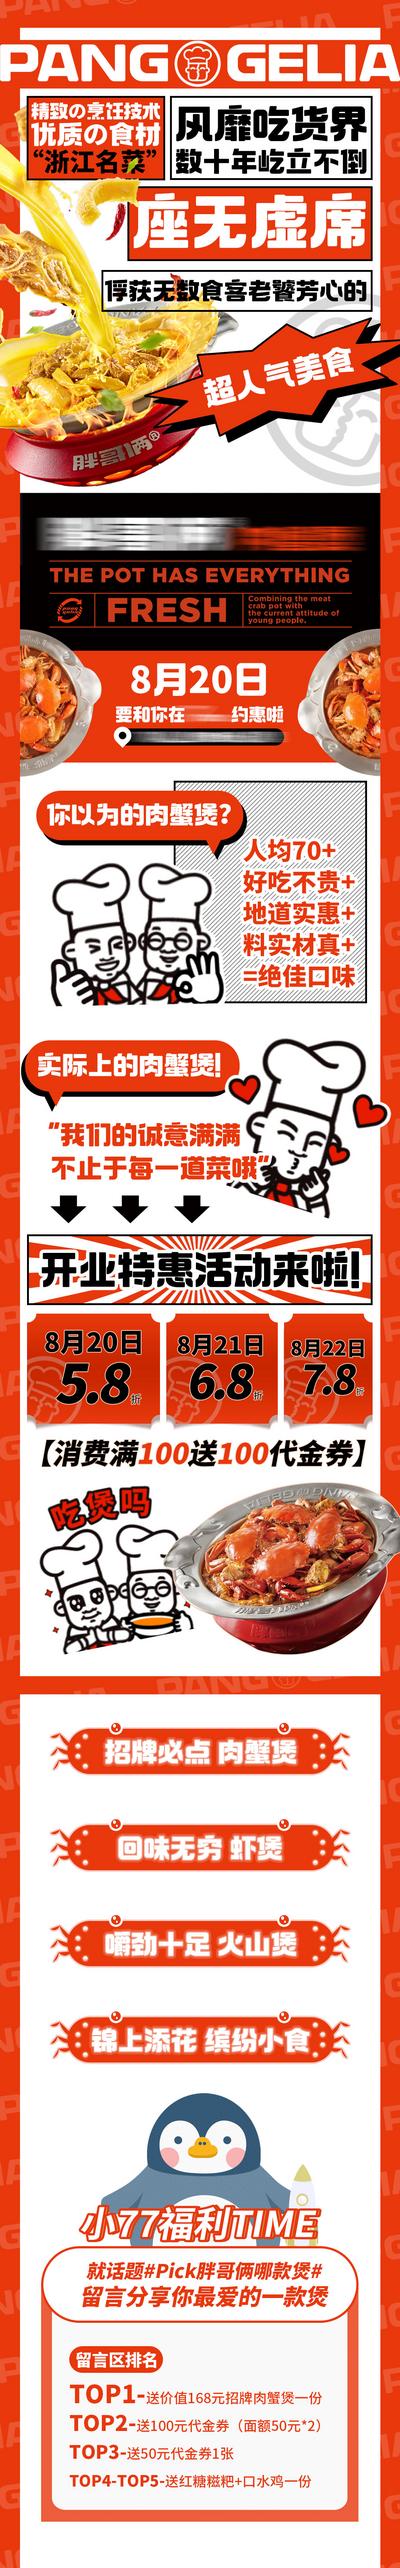 南门网 广告 海报 美食 餐饮 长图 活动 促销 推文 折扣